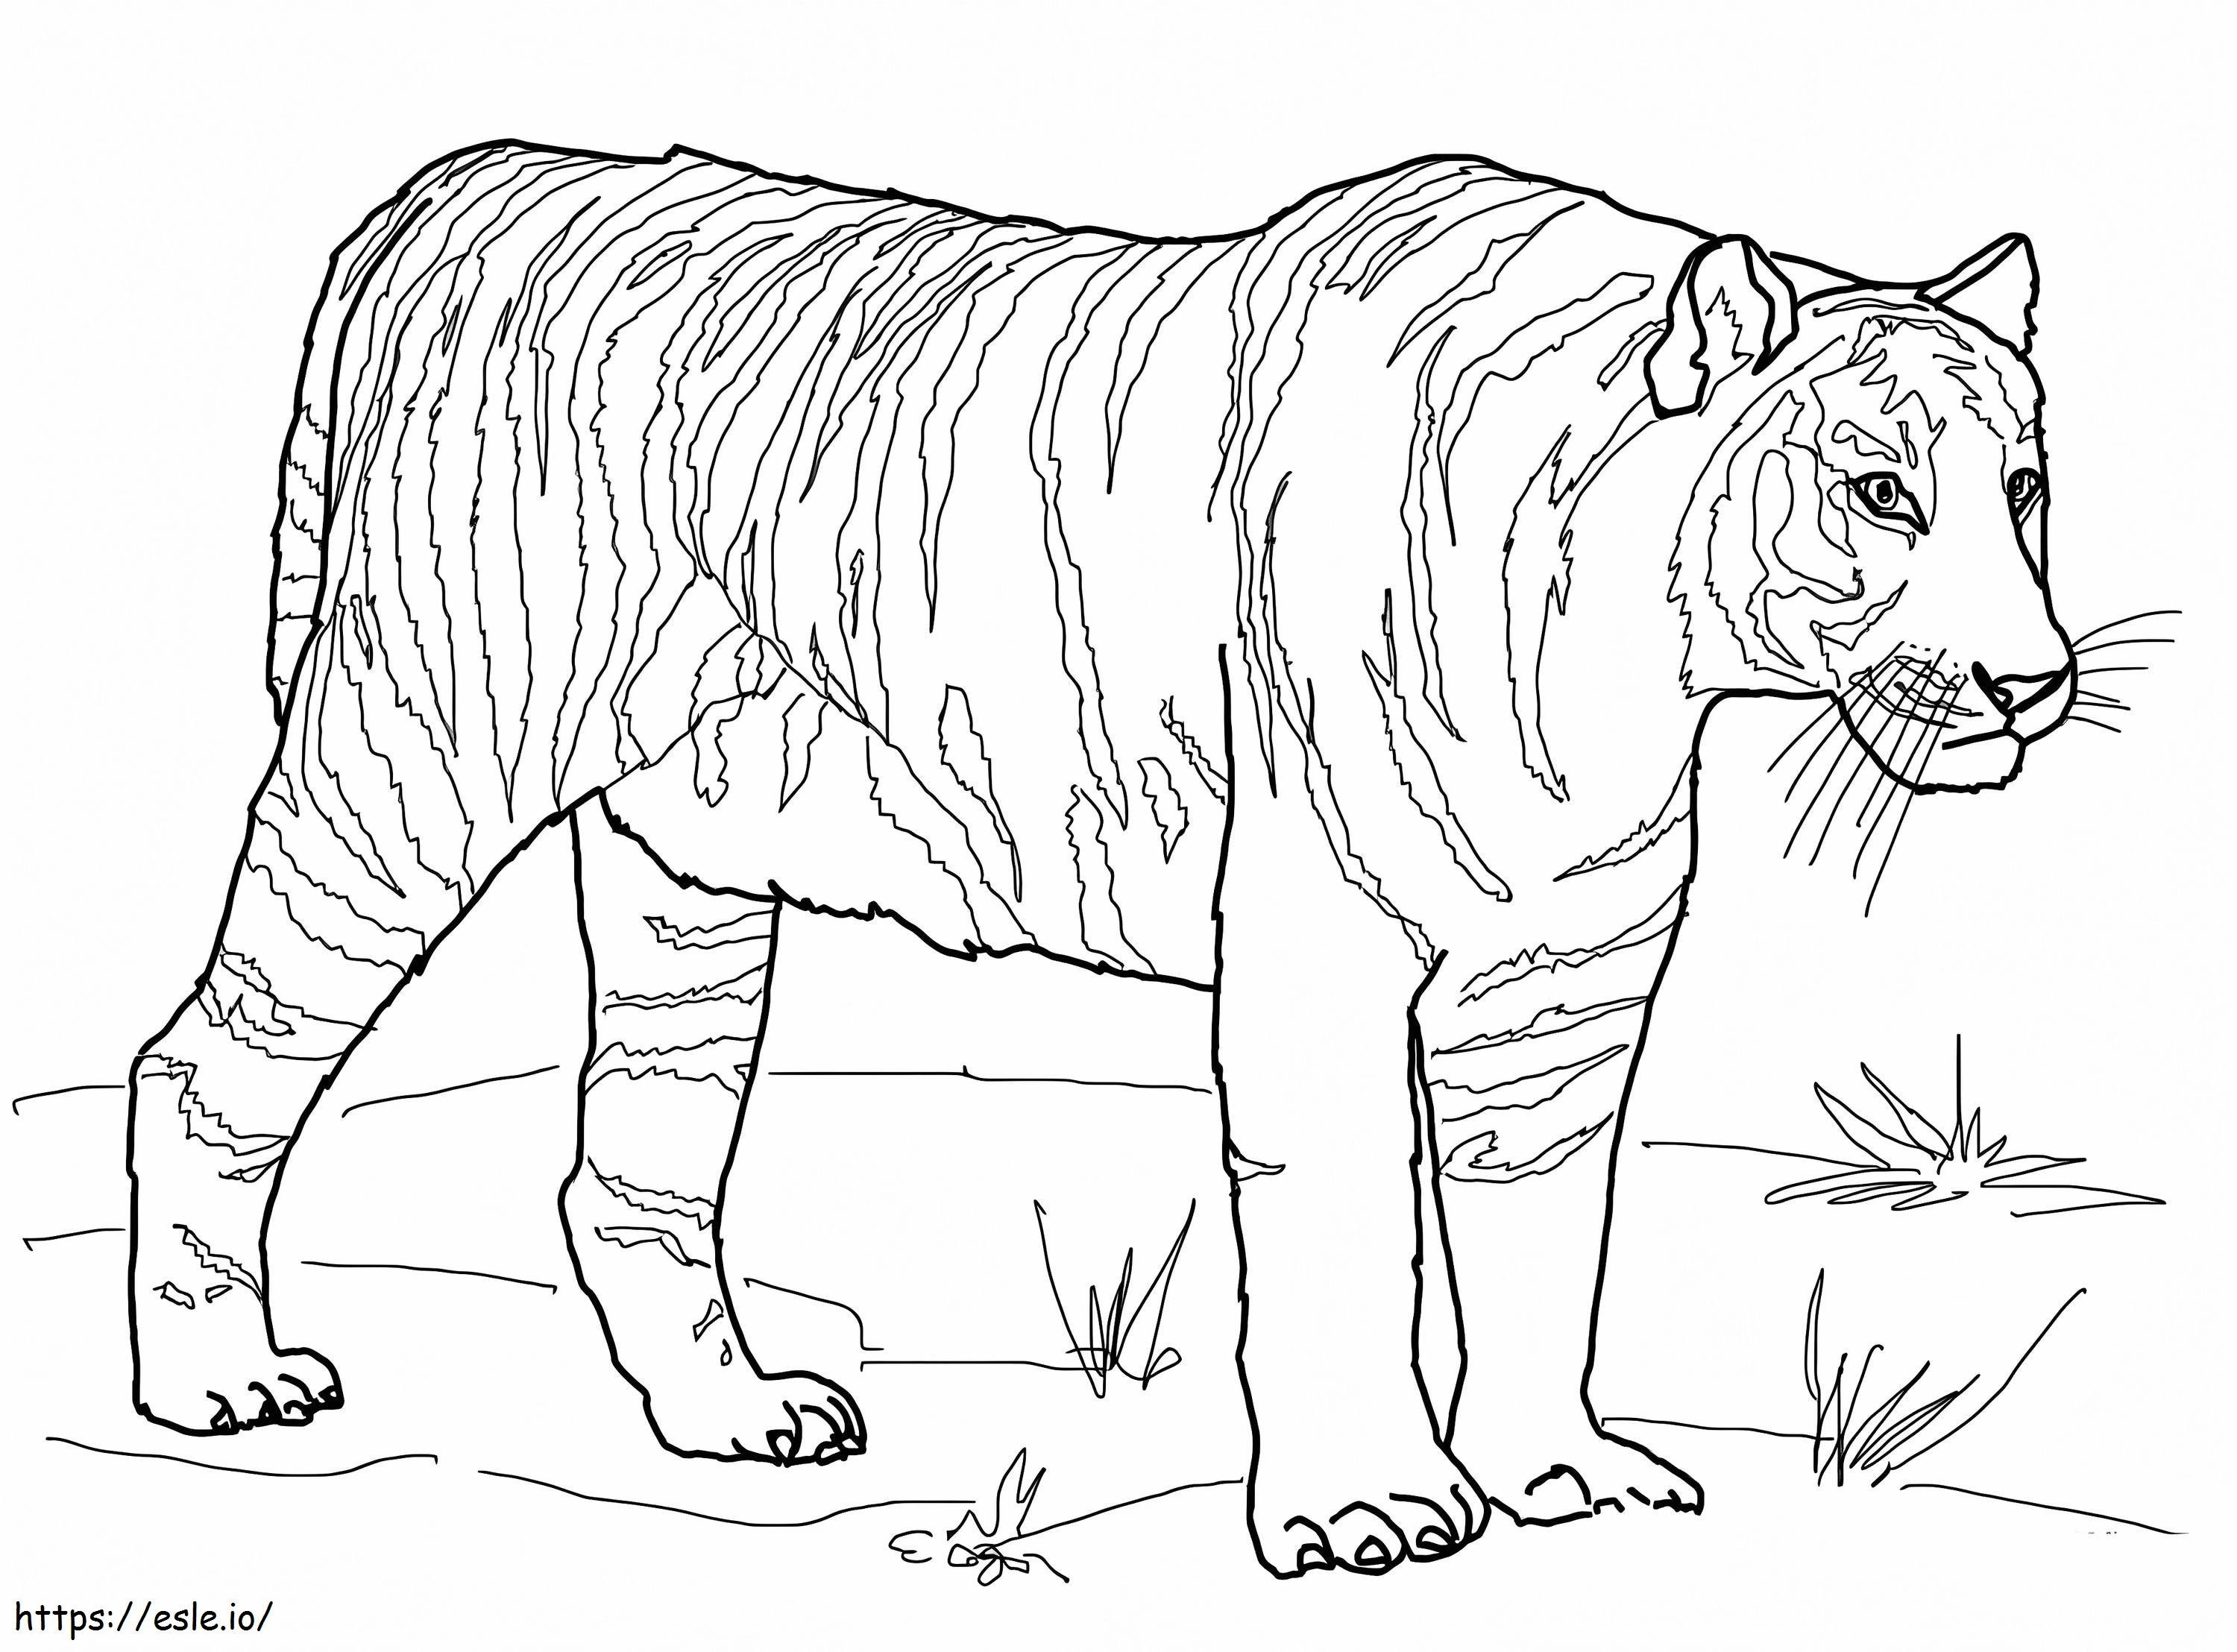 Bengalischer Tiger ausmalbilder